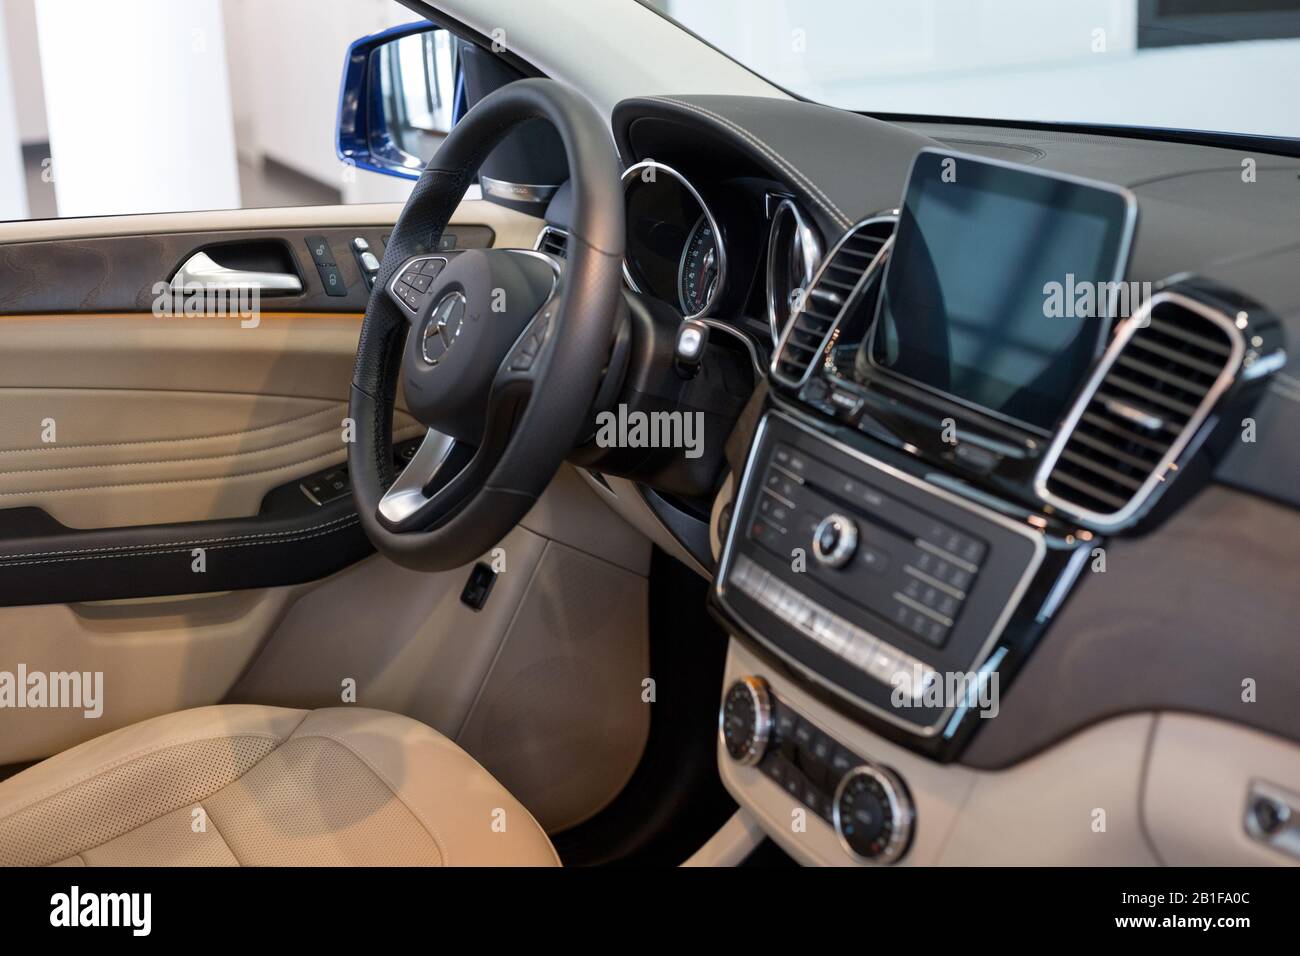 Russland, Izhewsk - 20. Februar 2020: Mercedes-Benz Showroom. Interieur des neuen GLE 350d mit luxuriösem Leder und braunem Holz. Bekannte Marke. Stockfoto